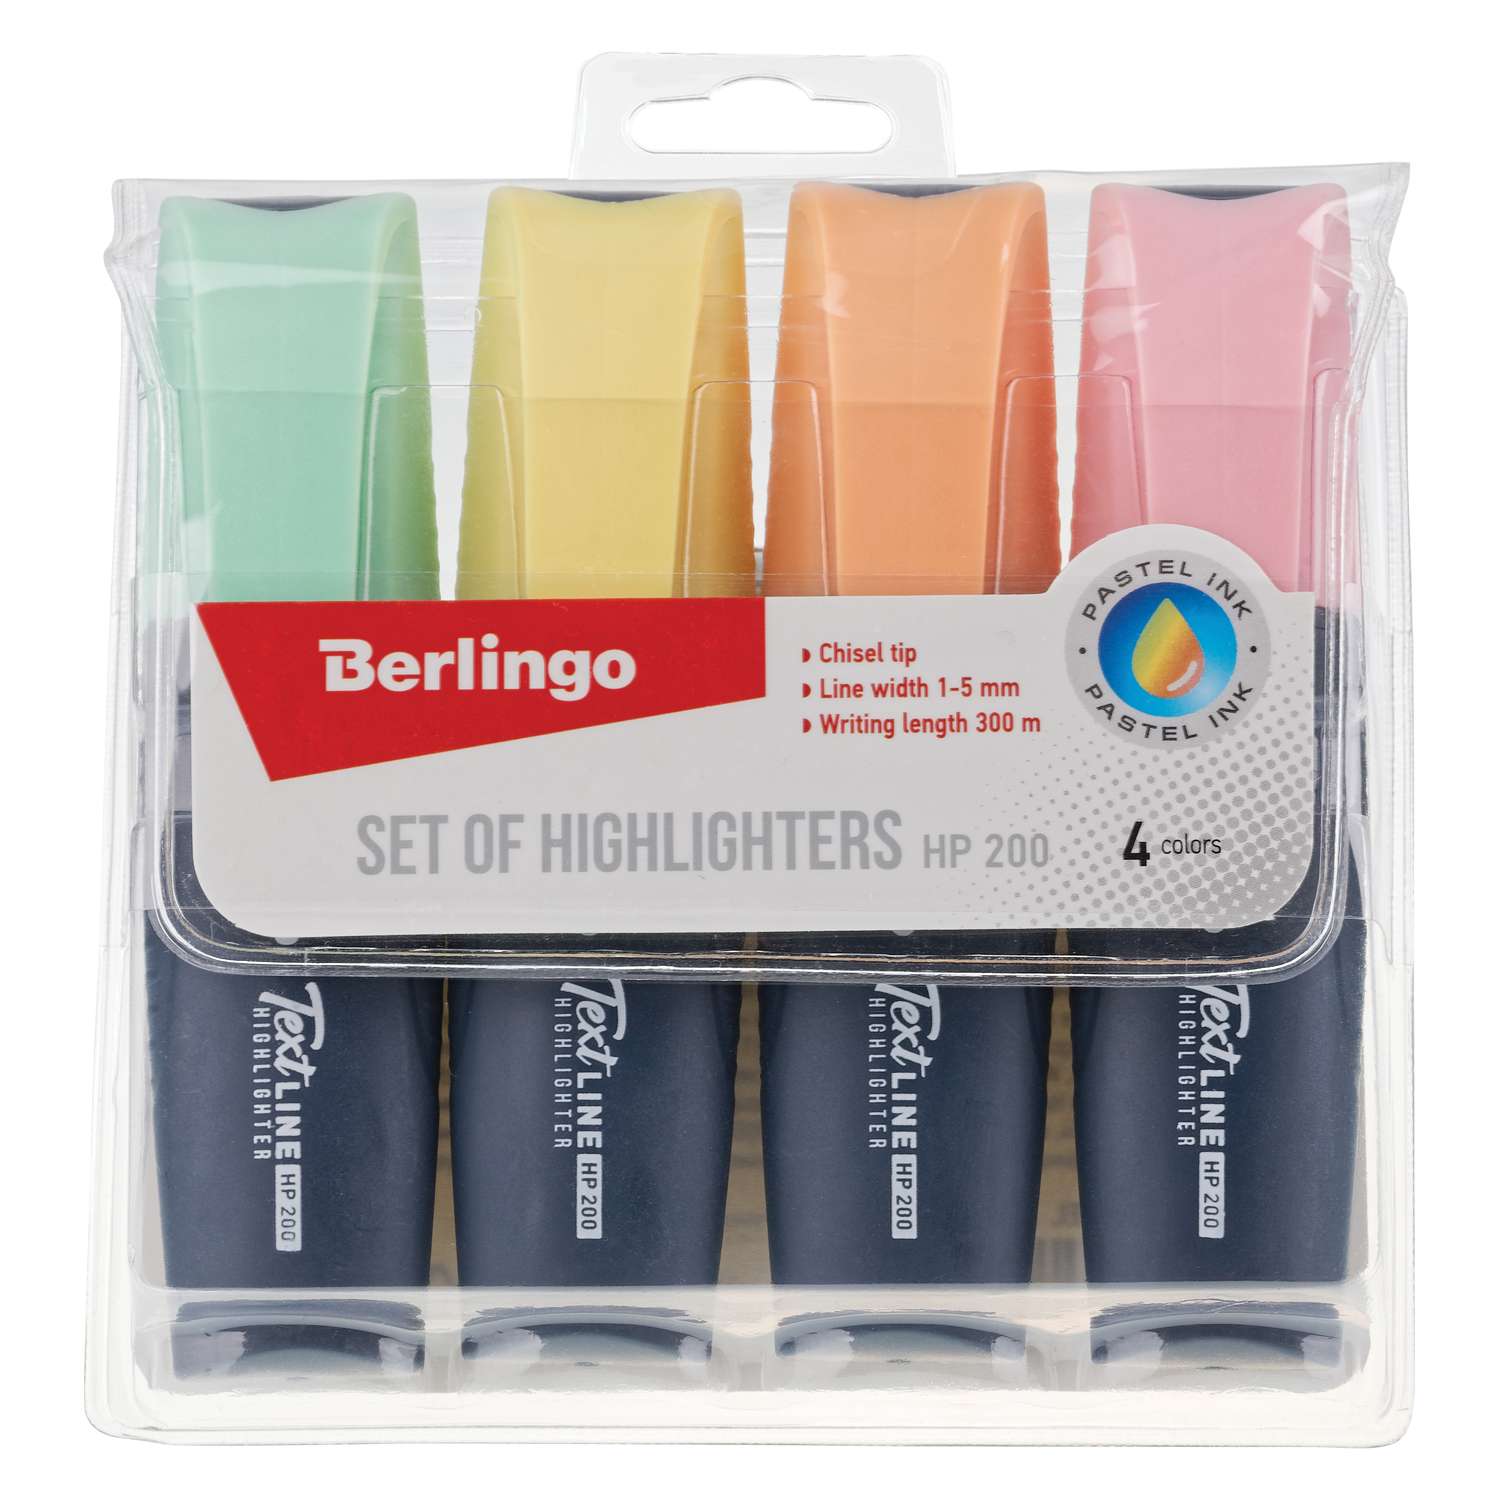 Набор текстовыделителей Berlingo Textline HP200 4 цвета пастельные 1-5мм - фото 1